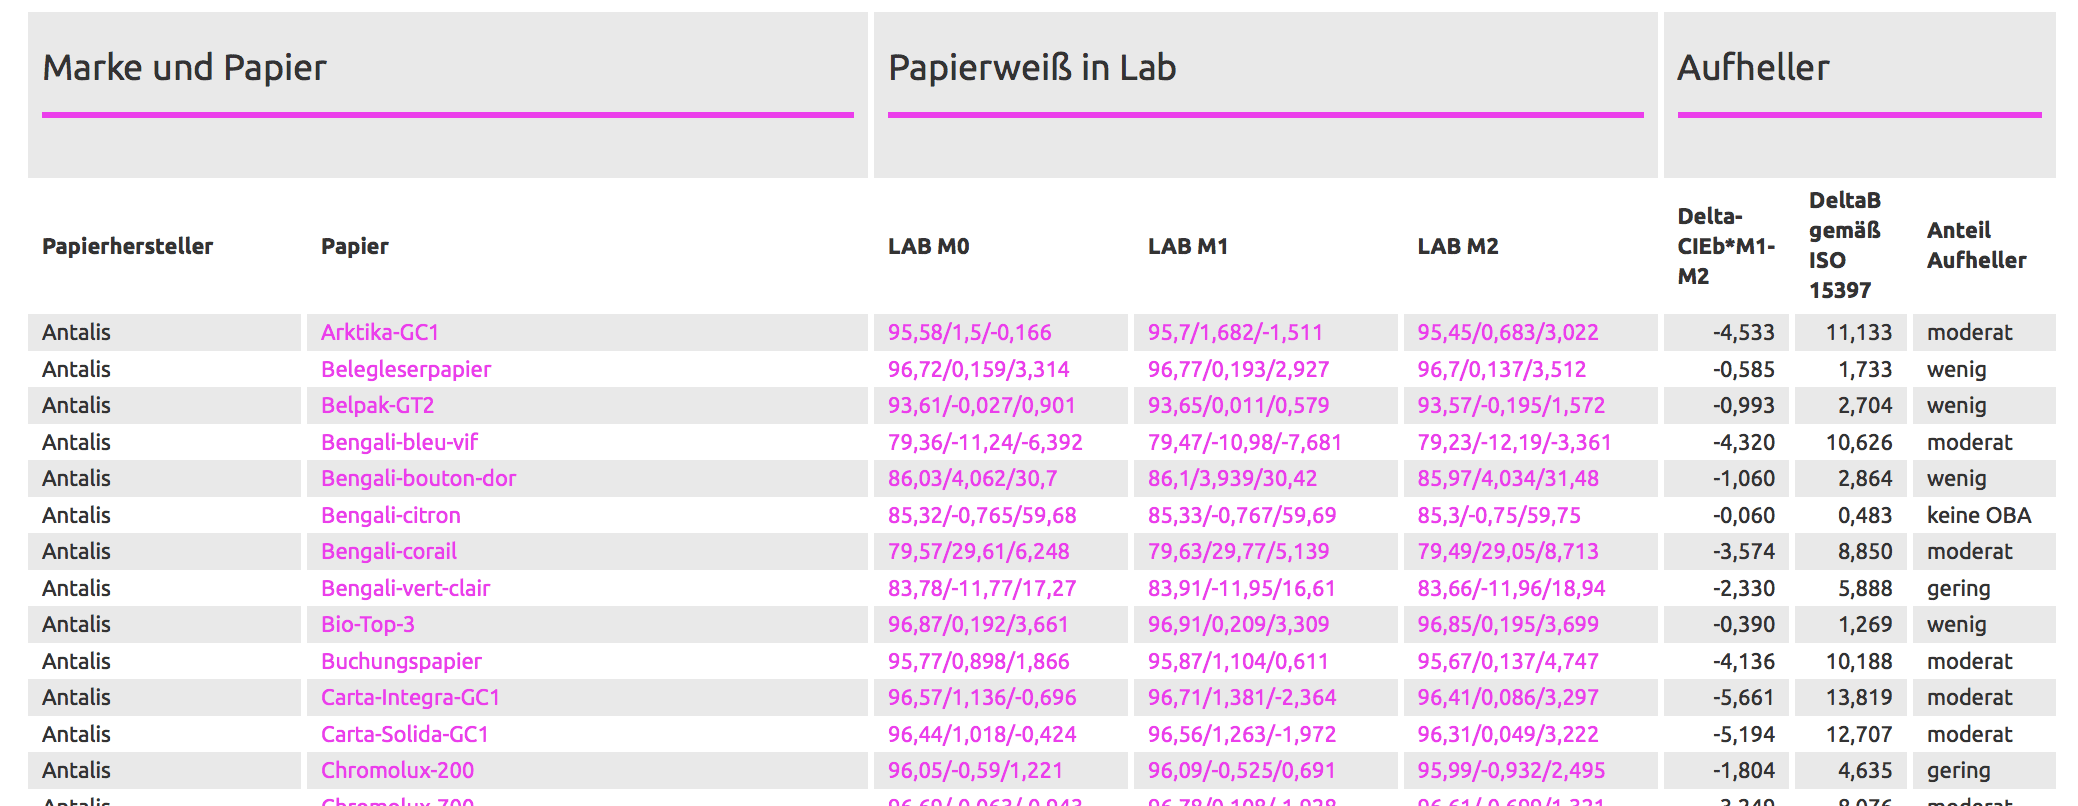 Tabulka bílého papíru na proof.de pro hodnoty bílého papíru všech hlavních výrobců papíru a online tiskáren.